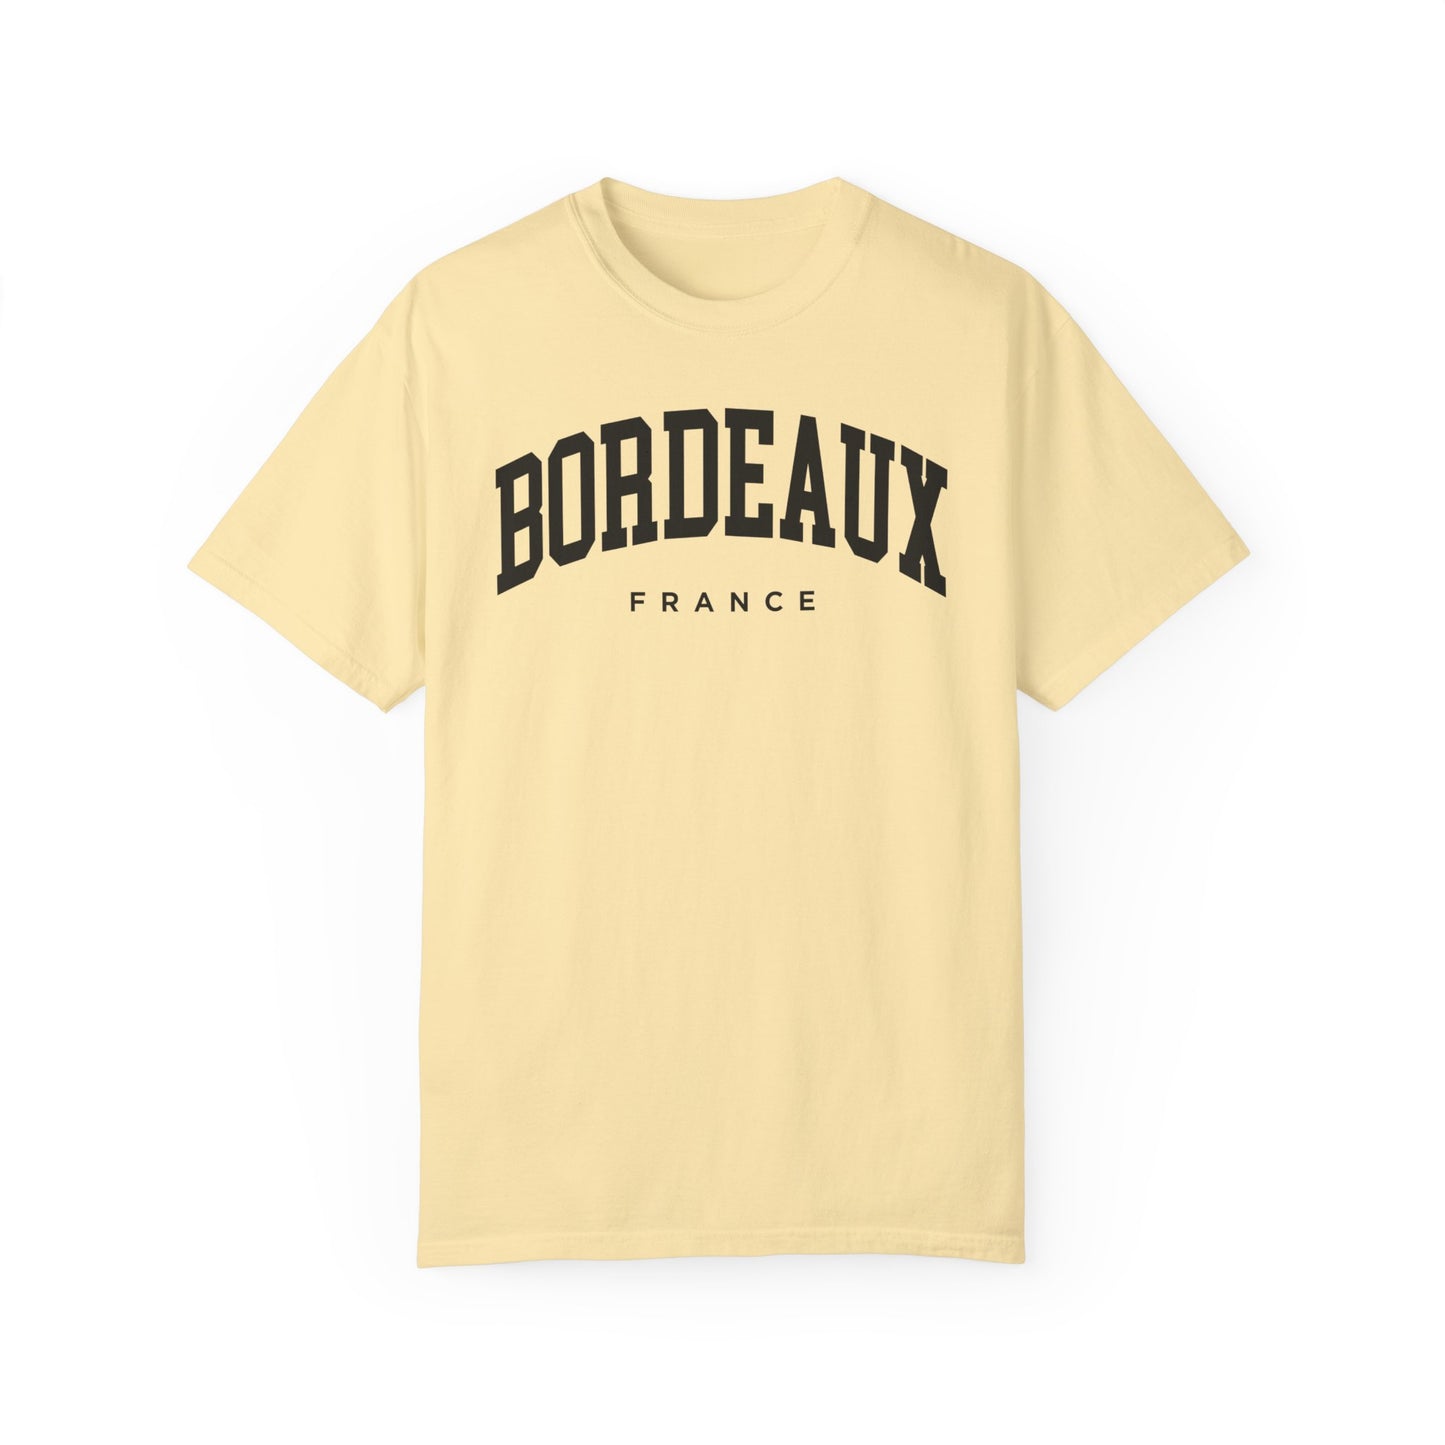 Bordeaux France Comfort Colors® Tee